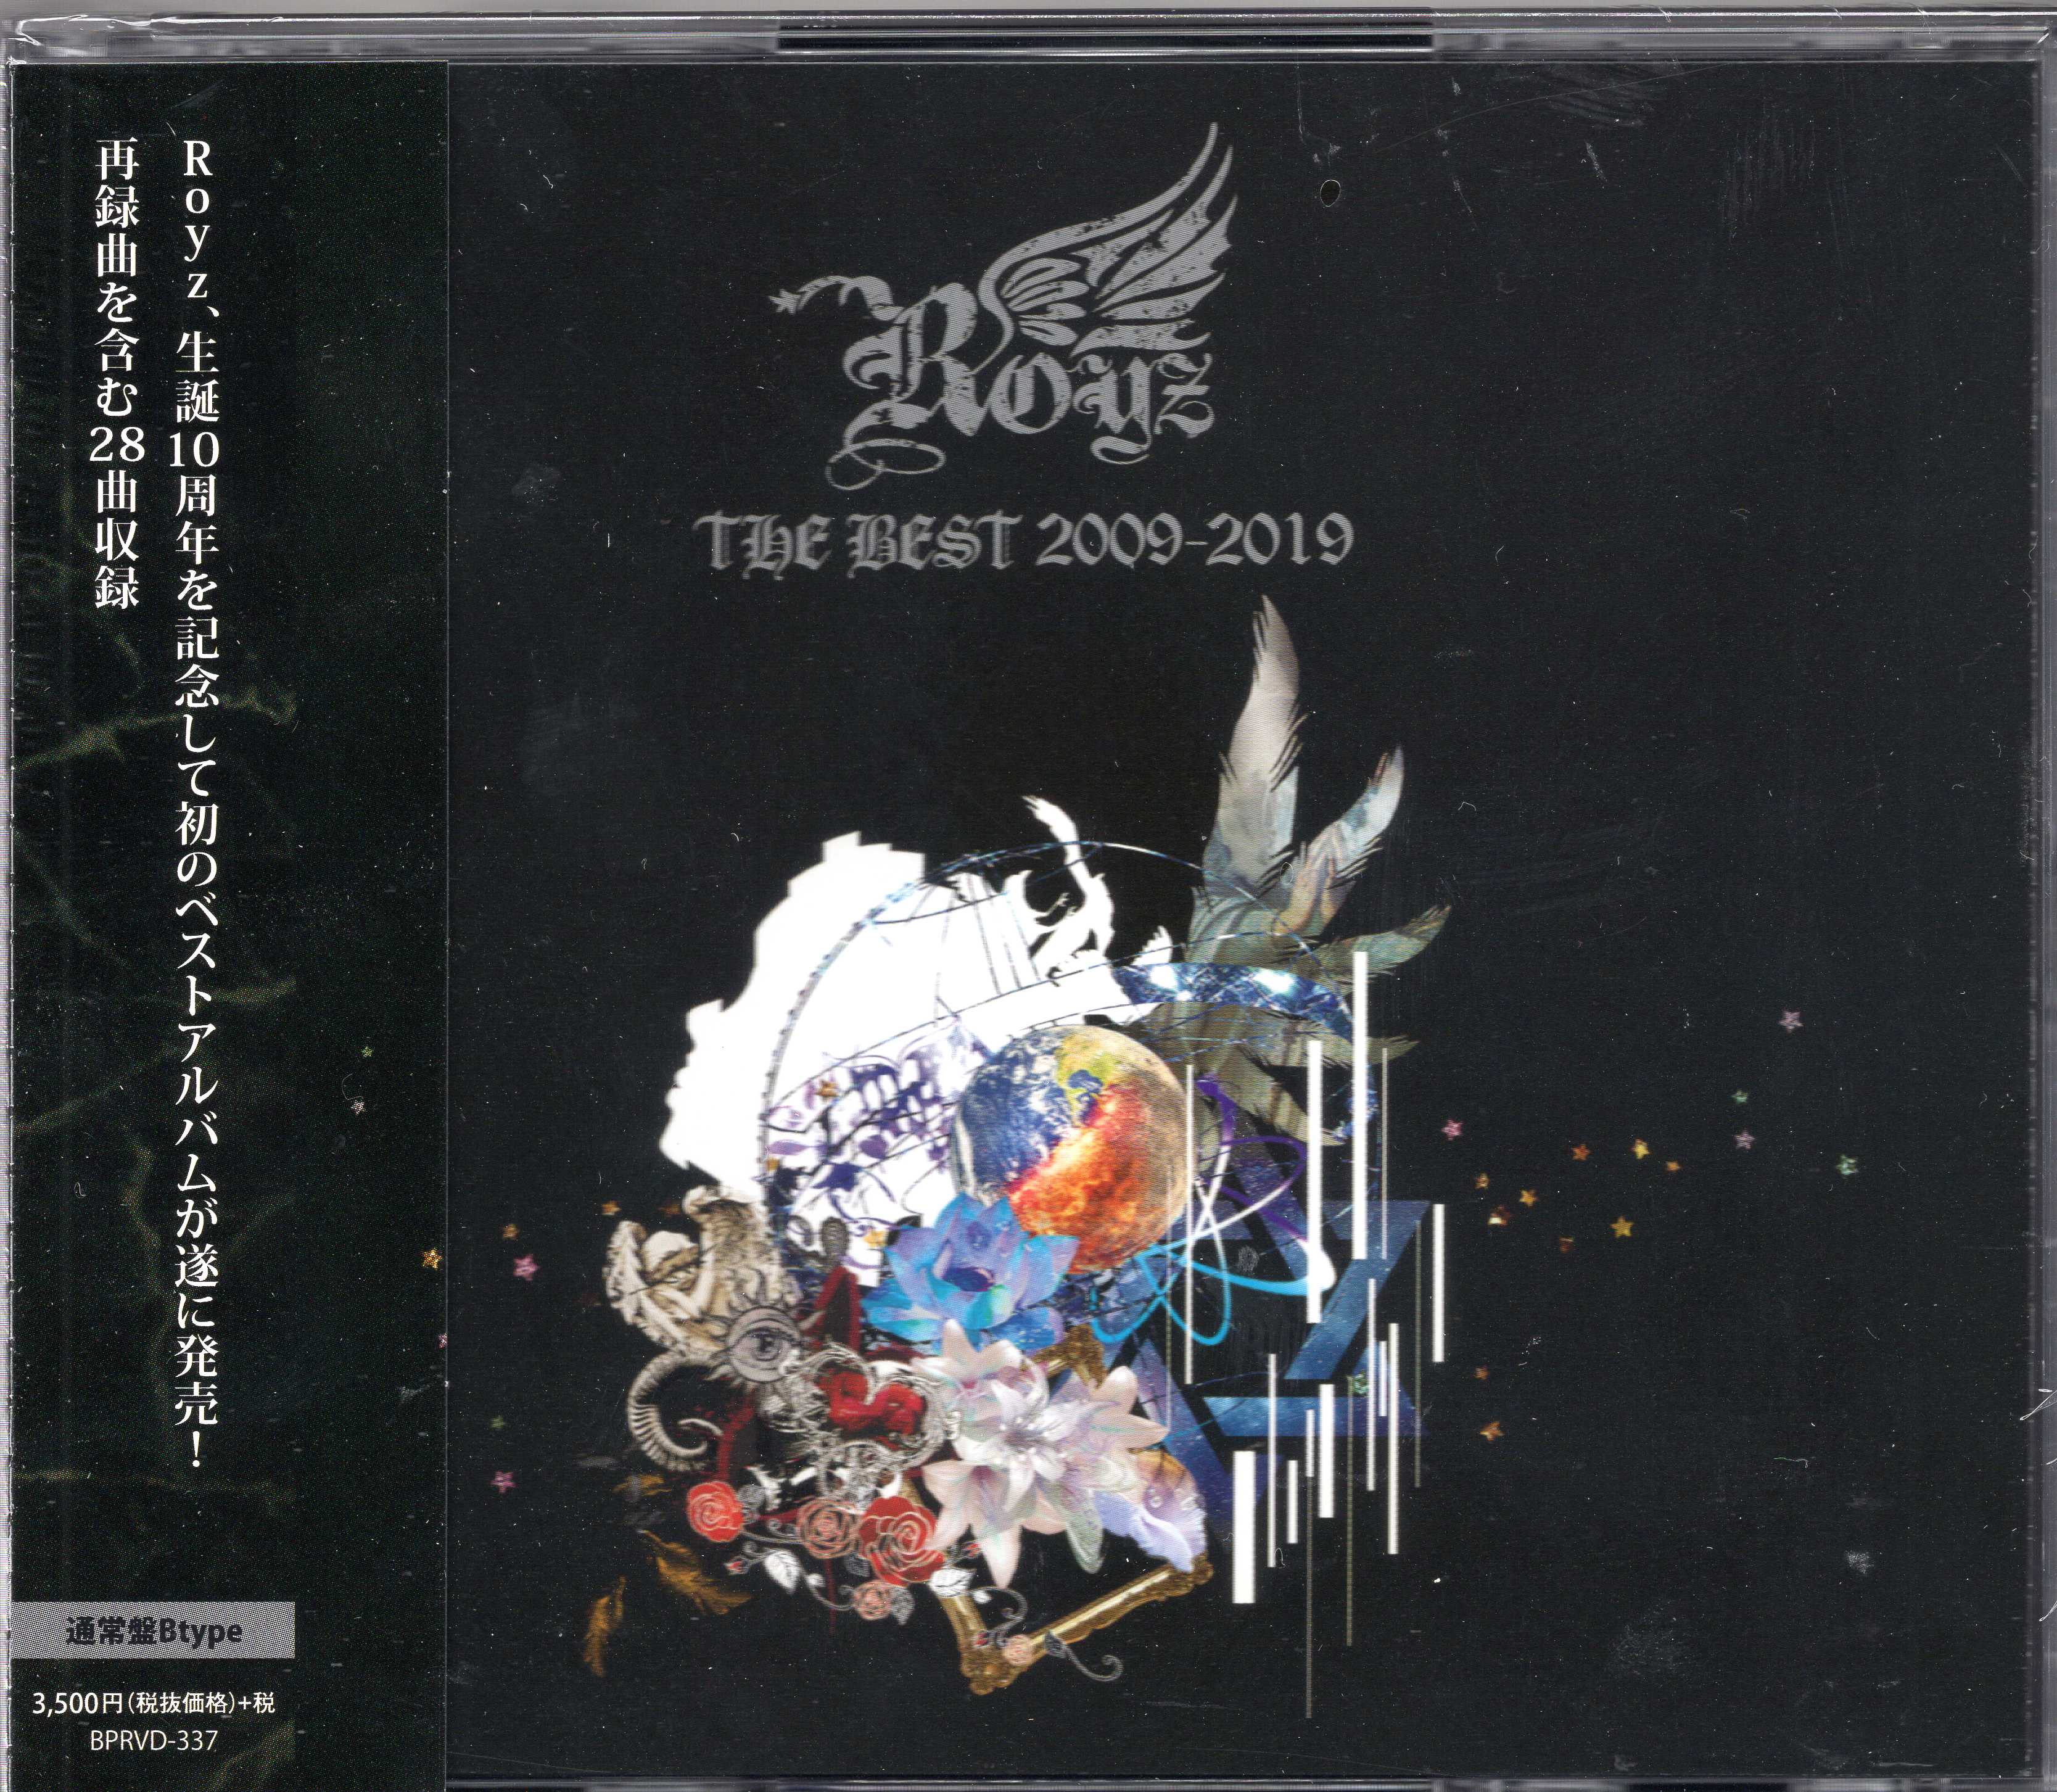 ロイズ の CD 【通常盤B】Royz THE BEST 2009-2019